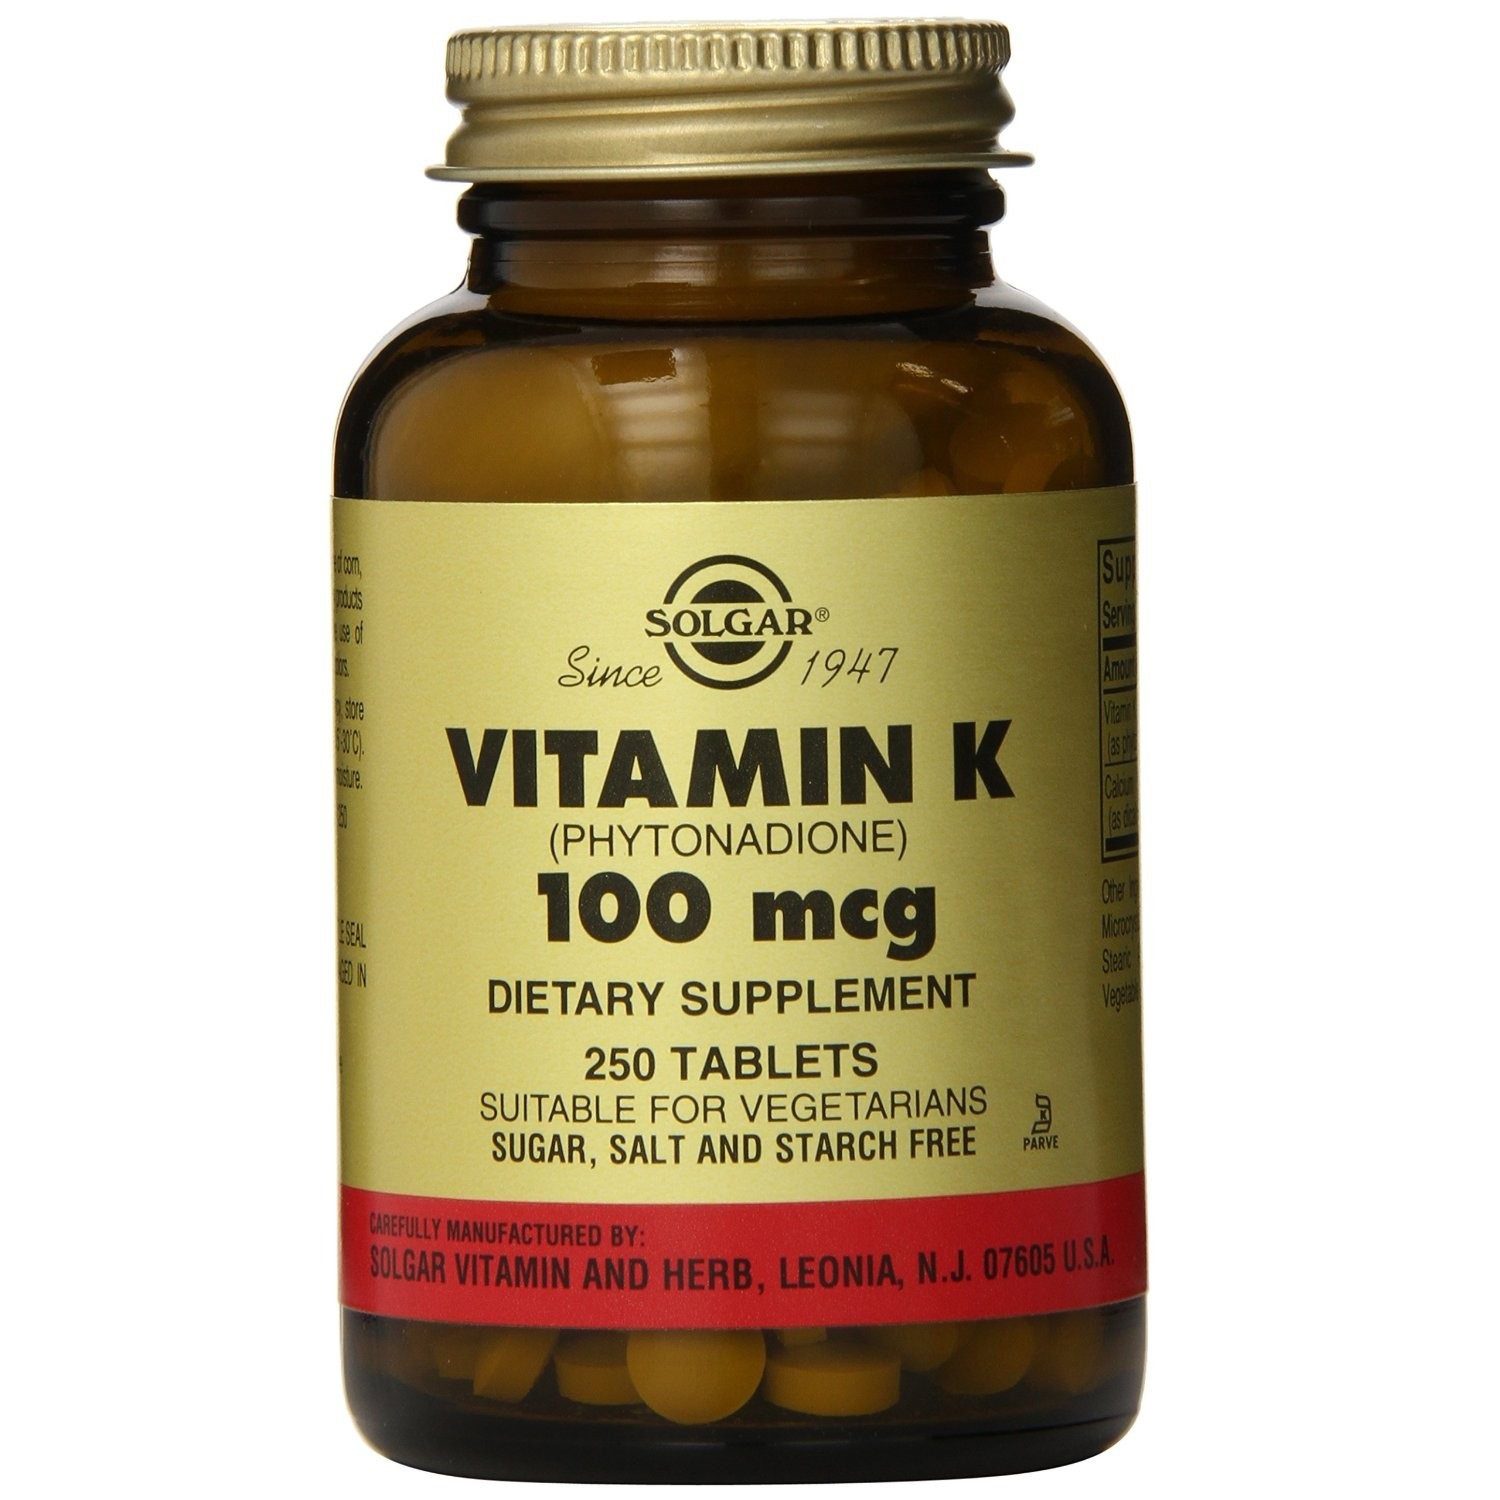 Solgar Vitamin K Supplement | Buy Best Vitamin K ...